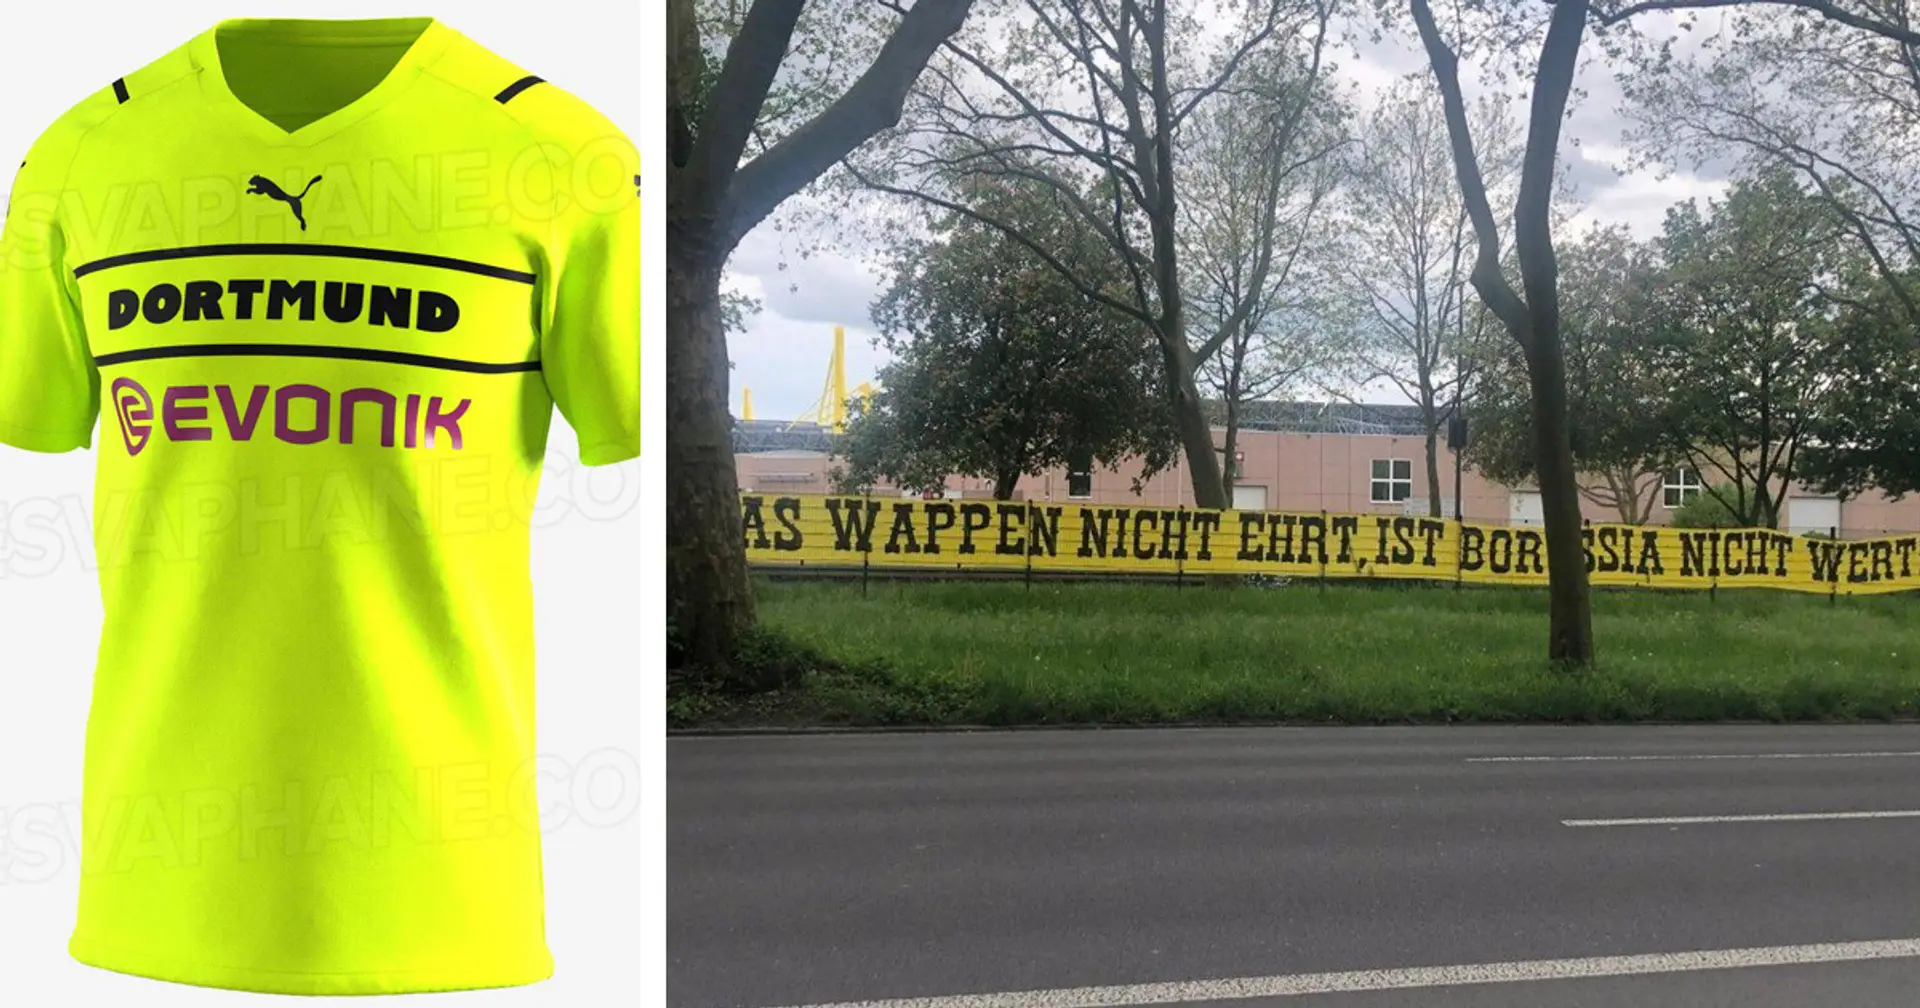 BVB-Fans protestieren gegen Trikot ohne Klub-Logo: "Wer das Wappen nicht ehrt, ist Borussia nicht wert!"